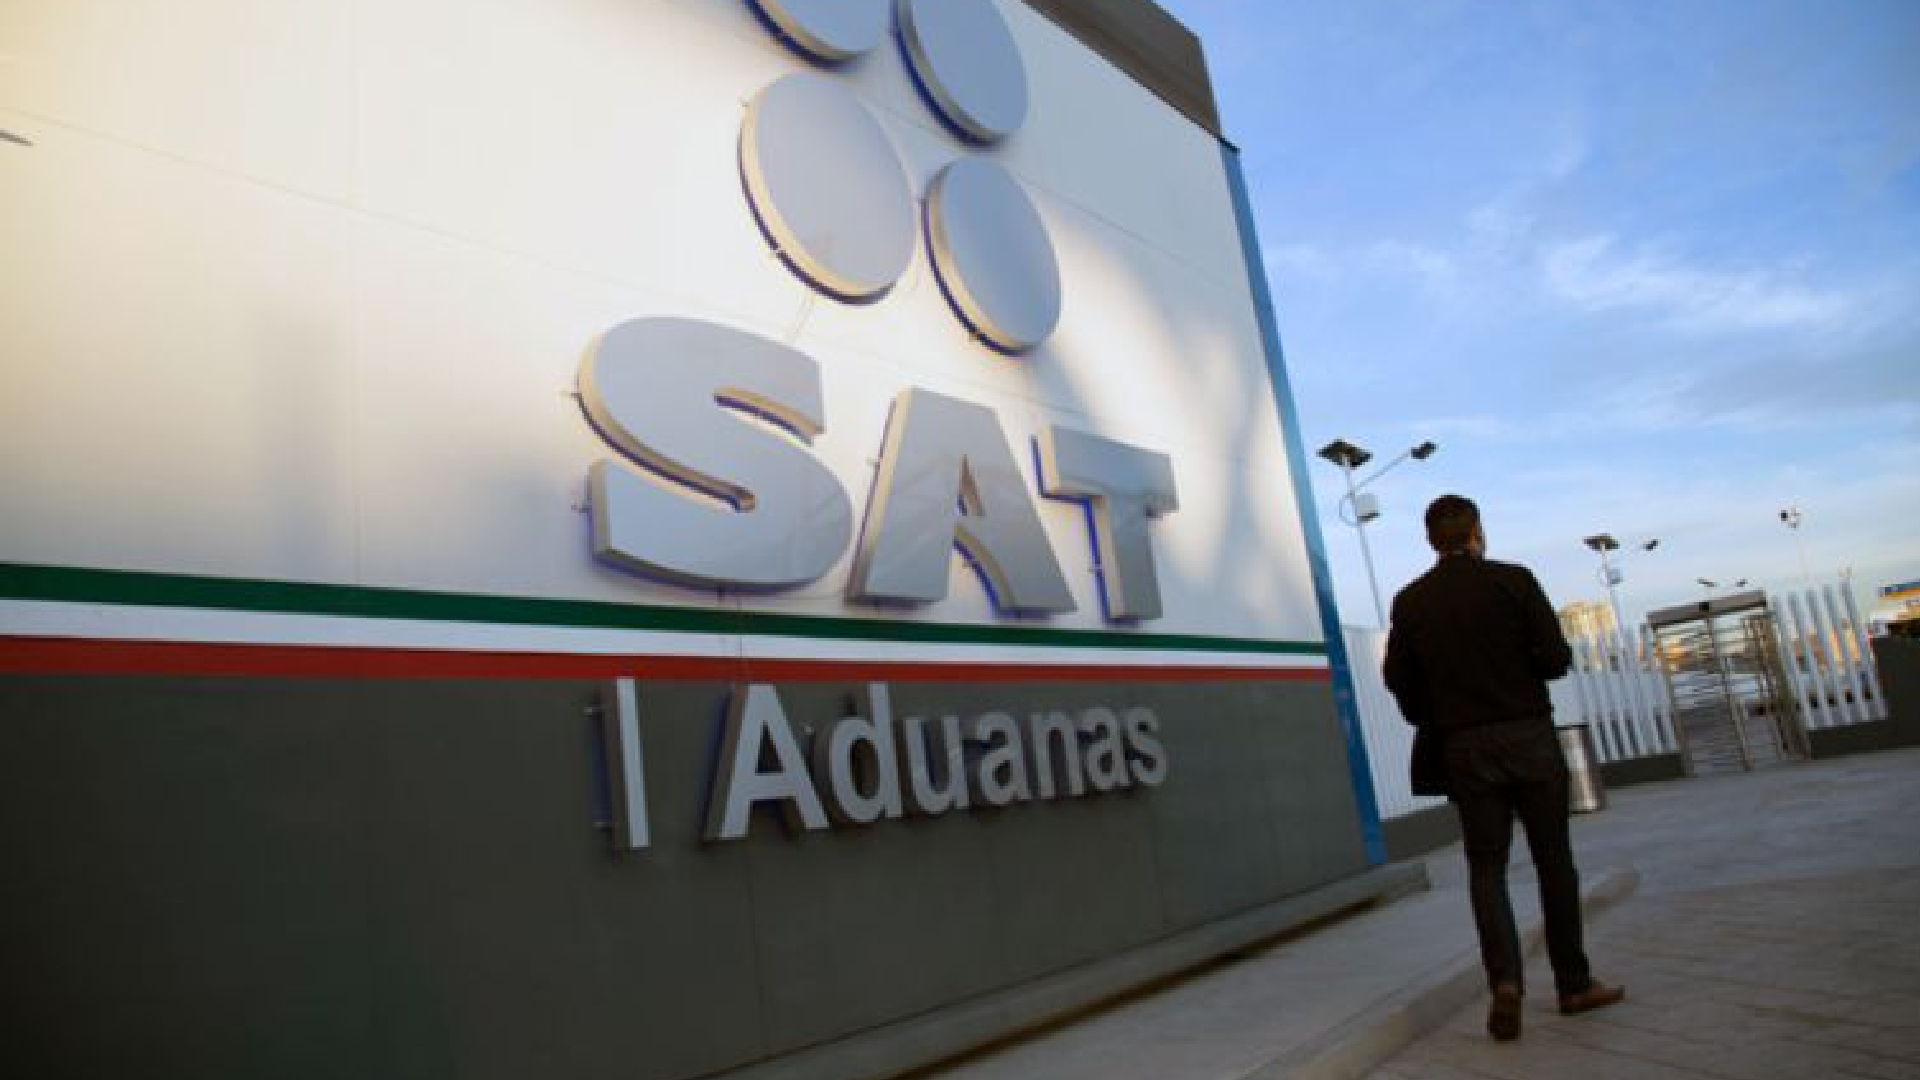 Hacienda alertó de posibles fraudes con multas apócrifas por “sobrecosto” en Aduanas SAT